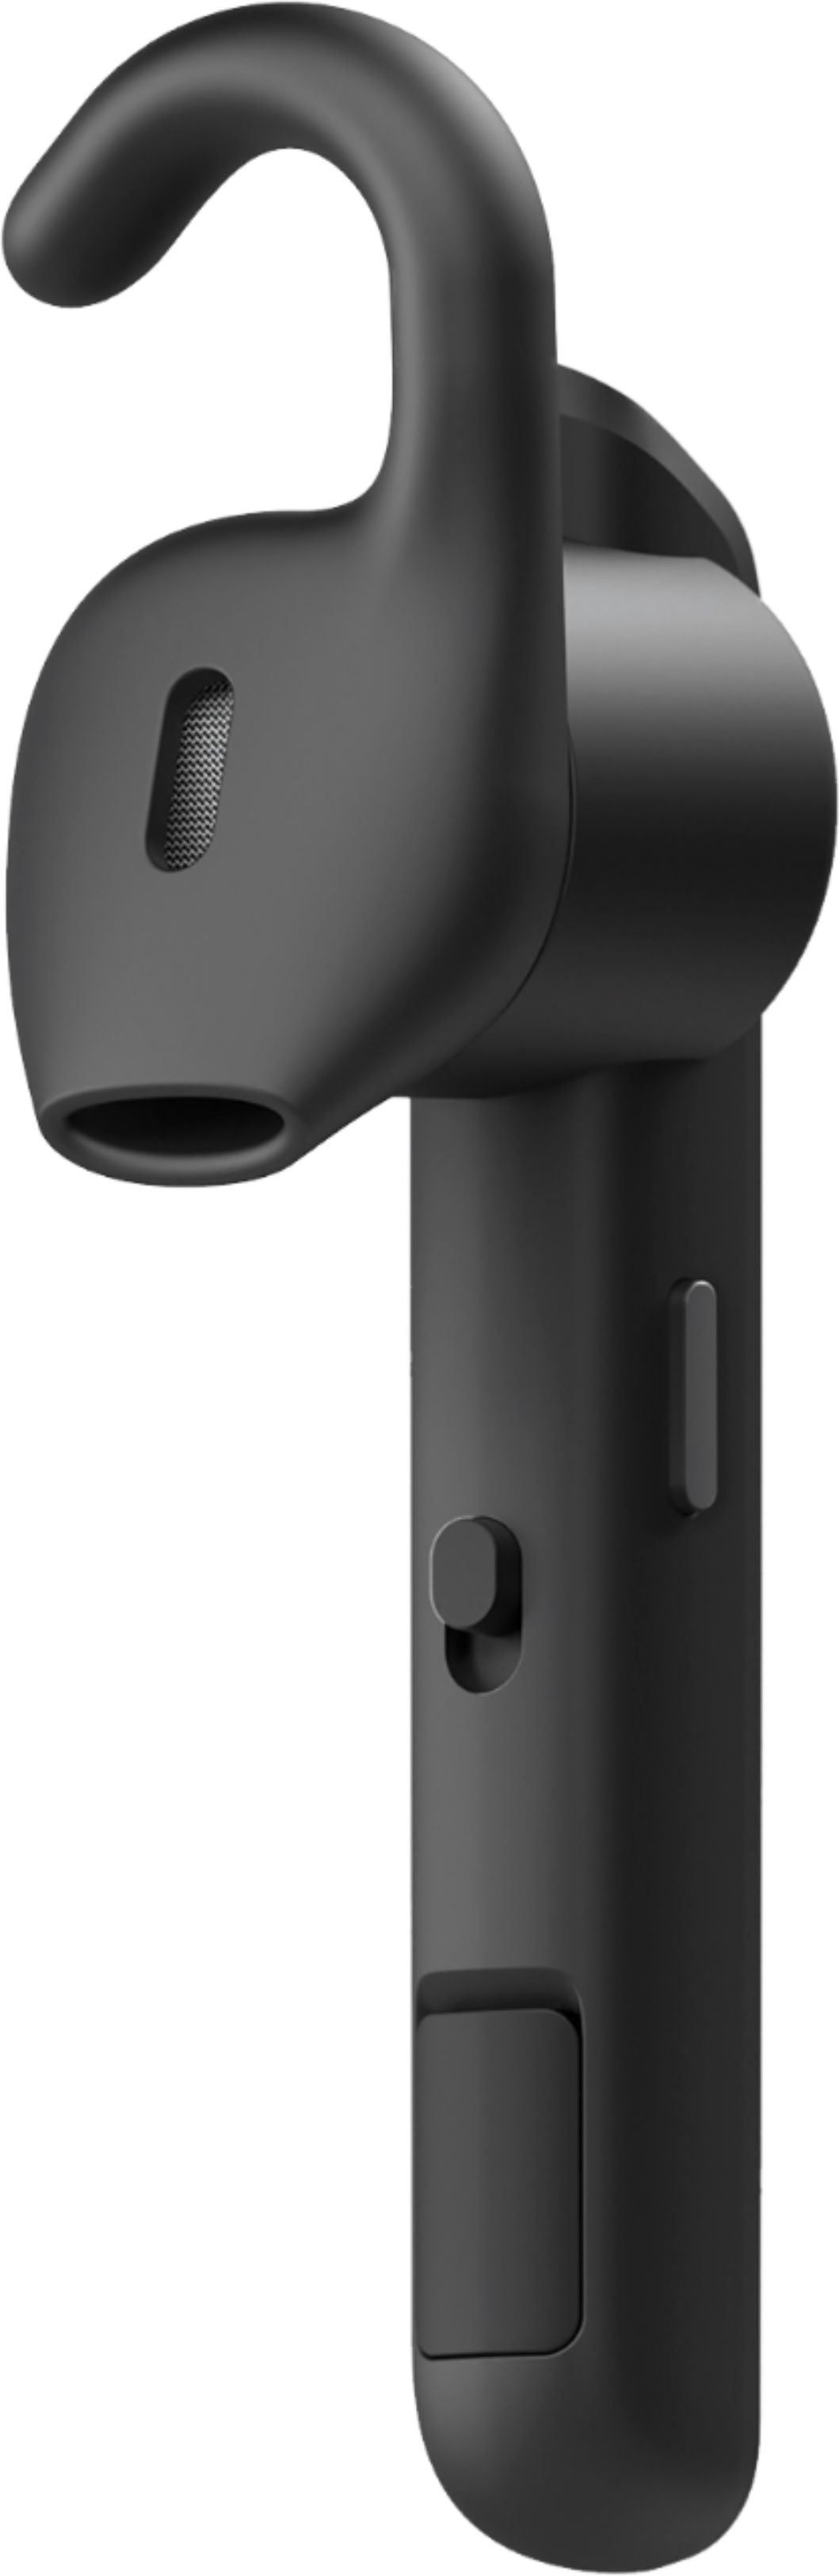 heden Compatibel met Hallo Jabra Talk 45 Bluetooth In-Ear Headset with Siri/Google Assistant Black  100-99800902-14 - Best Buy